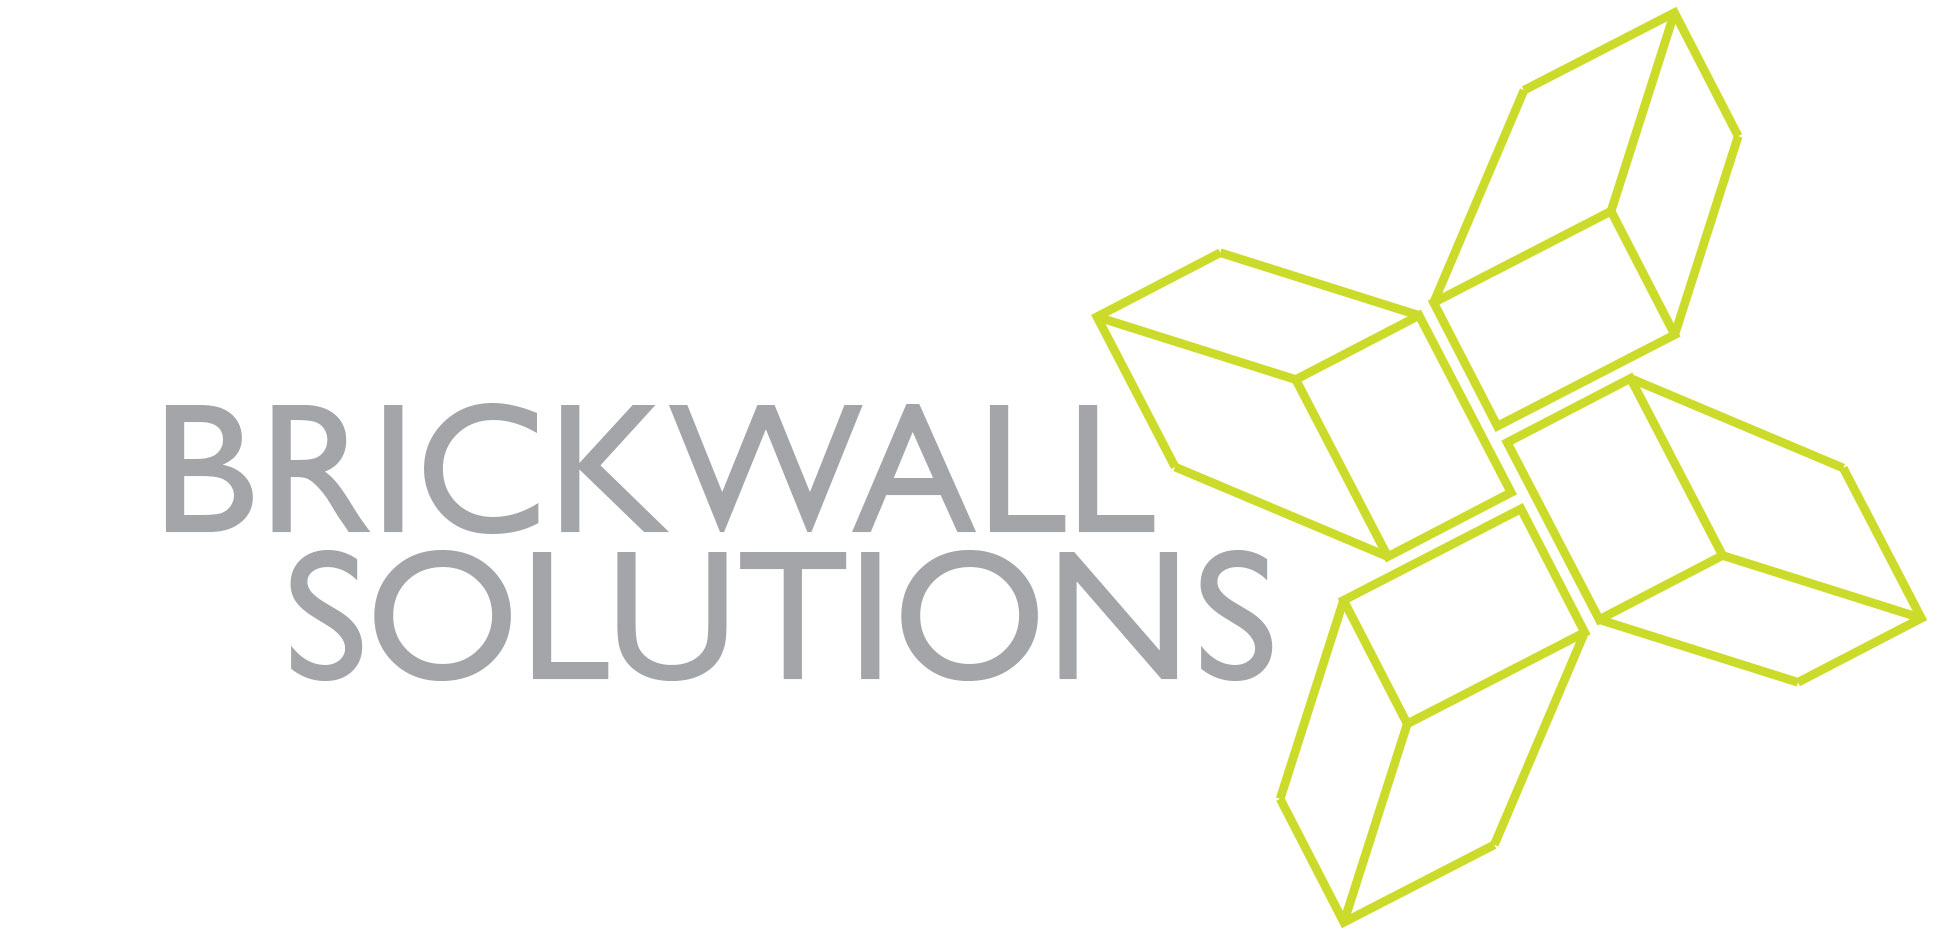 Brickwall Solutions